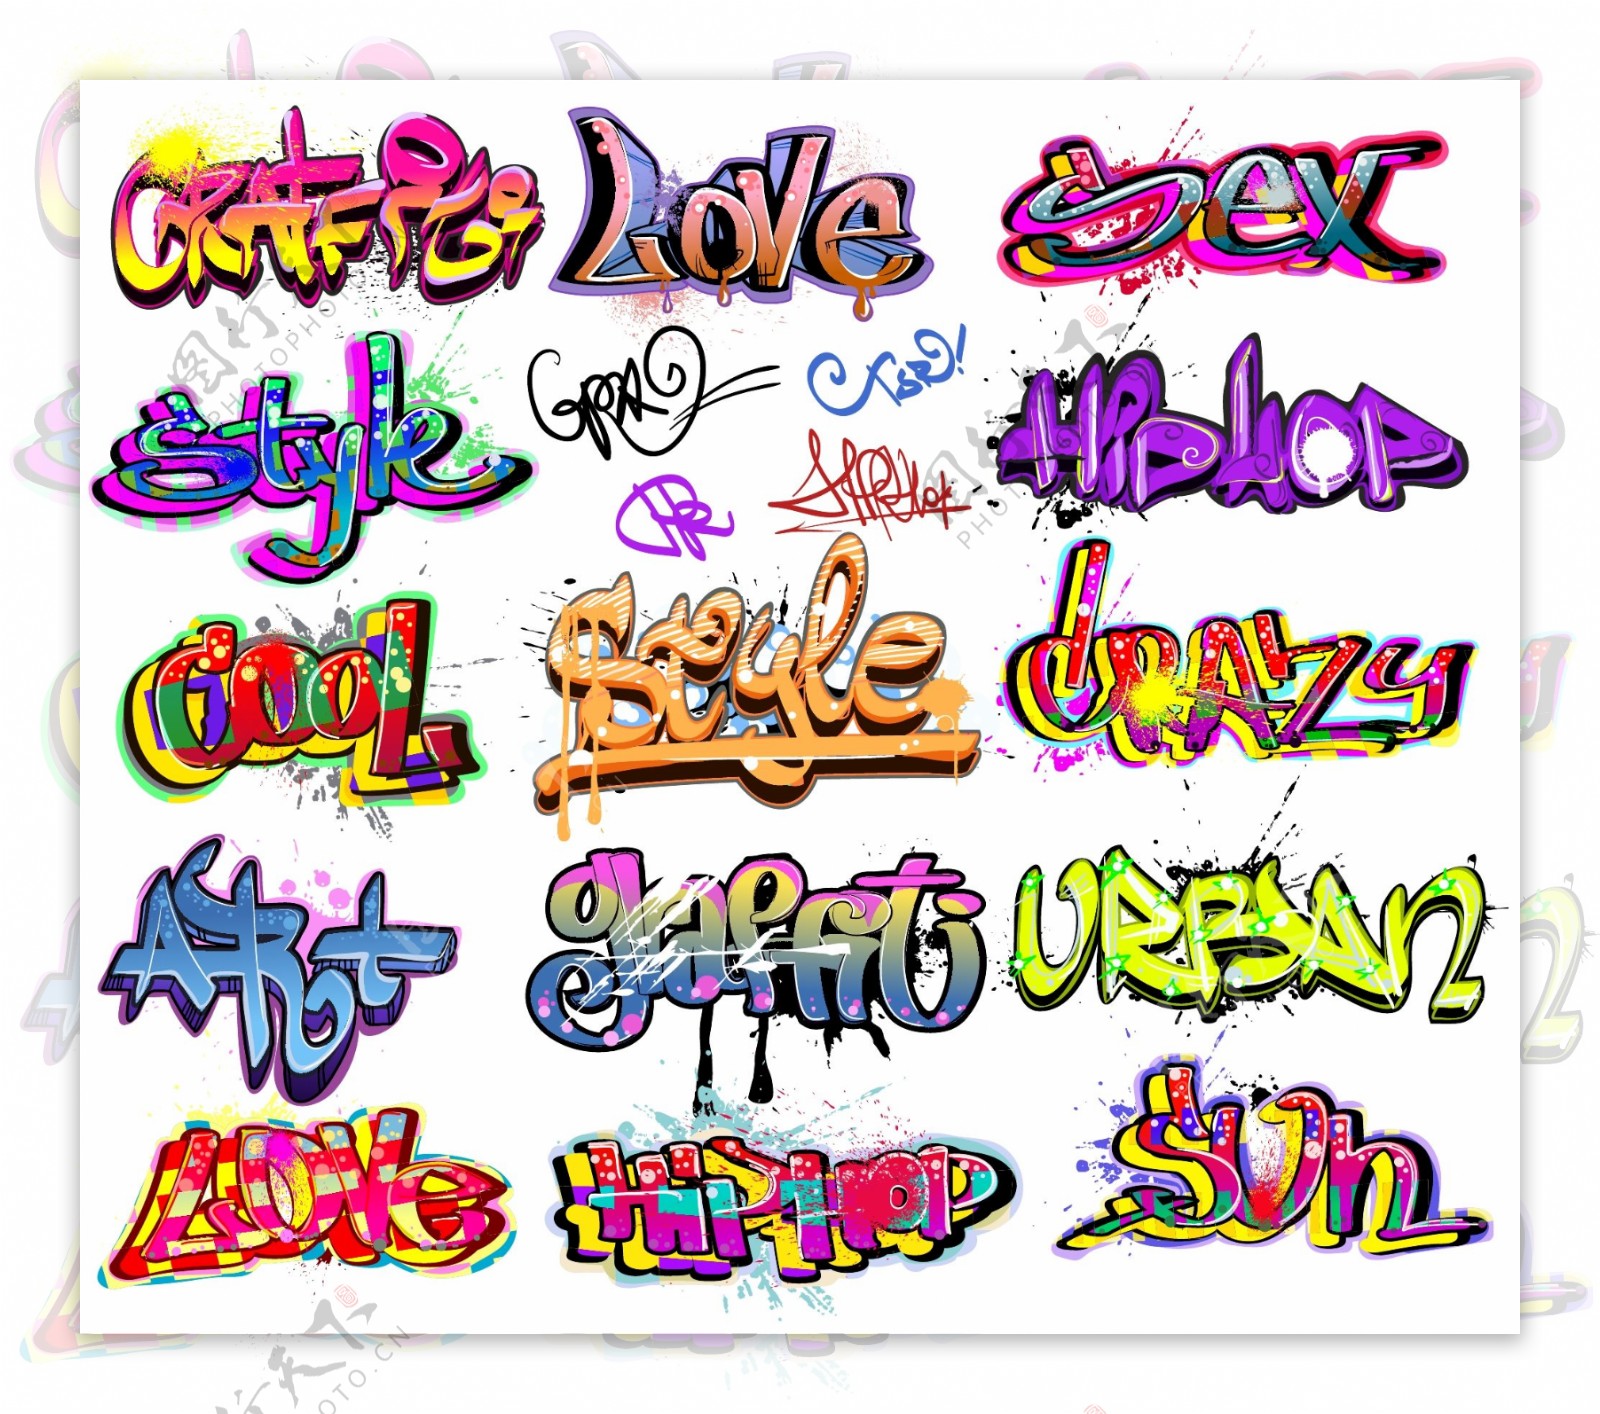 嘻哈街头涂鸦喷漆字体矢量图片